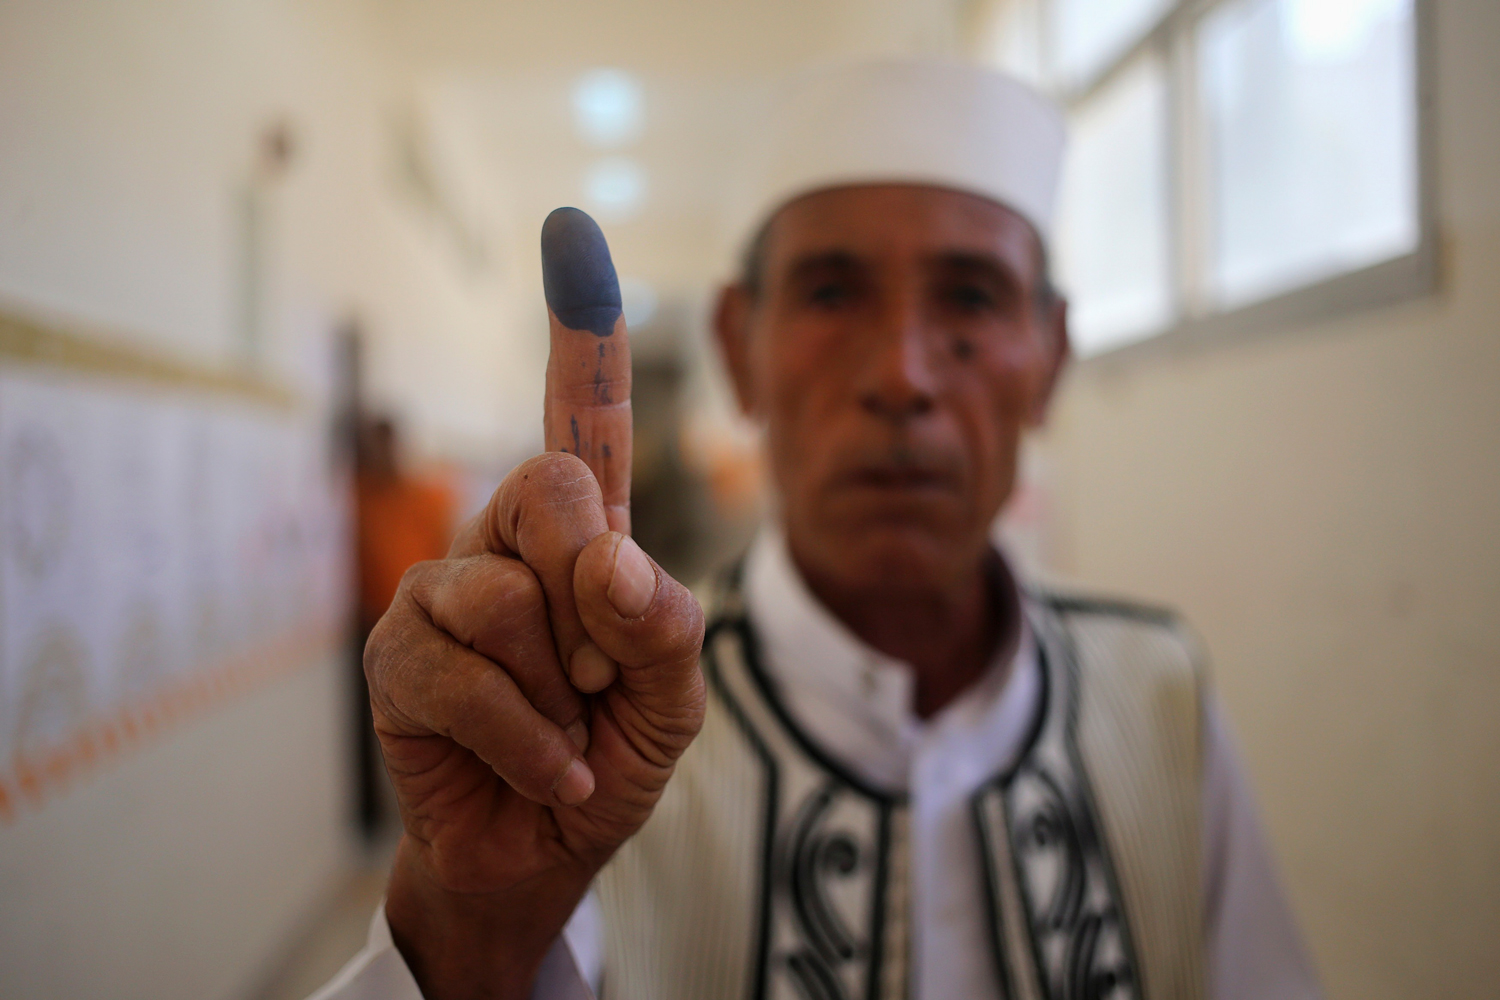 Libia acude a las urnas en medio del caos político y de seguridad